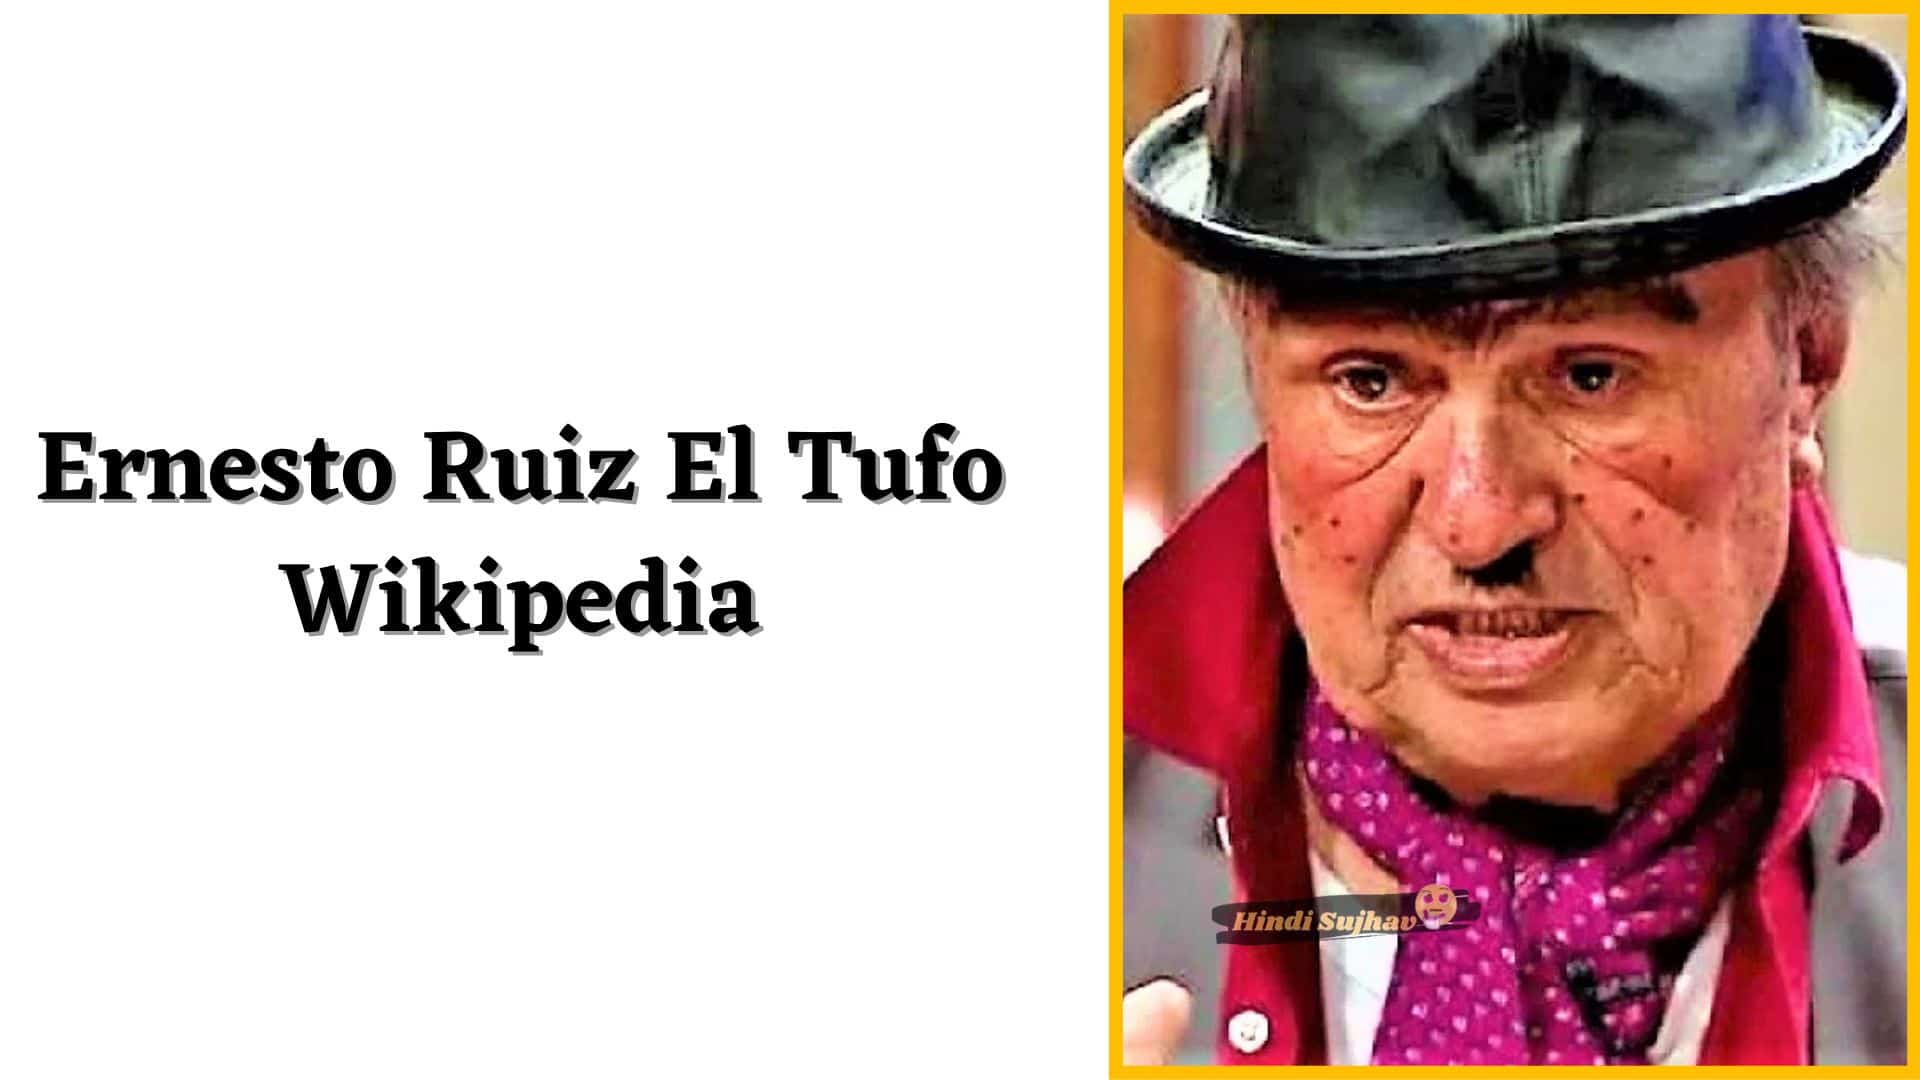 Ernesto Ruiz El Tufo Wikipedia, Biografia, Wiki, eDad